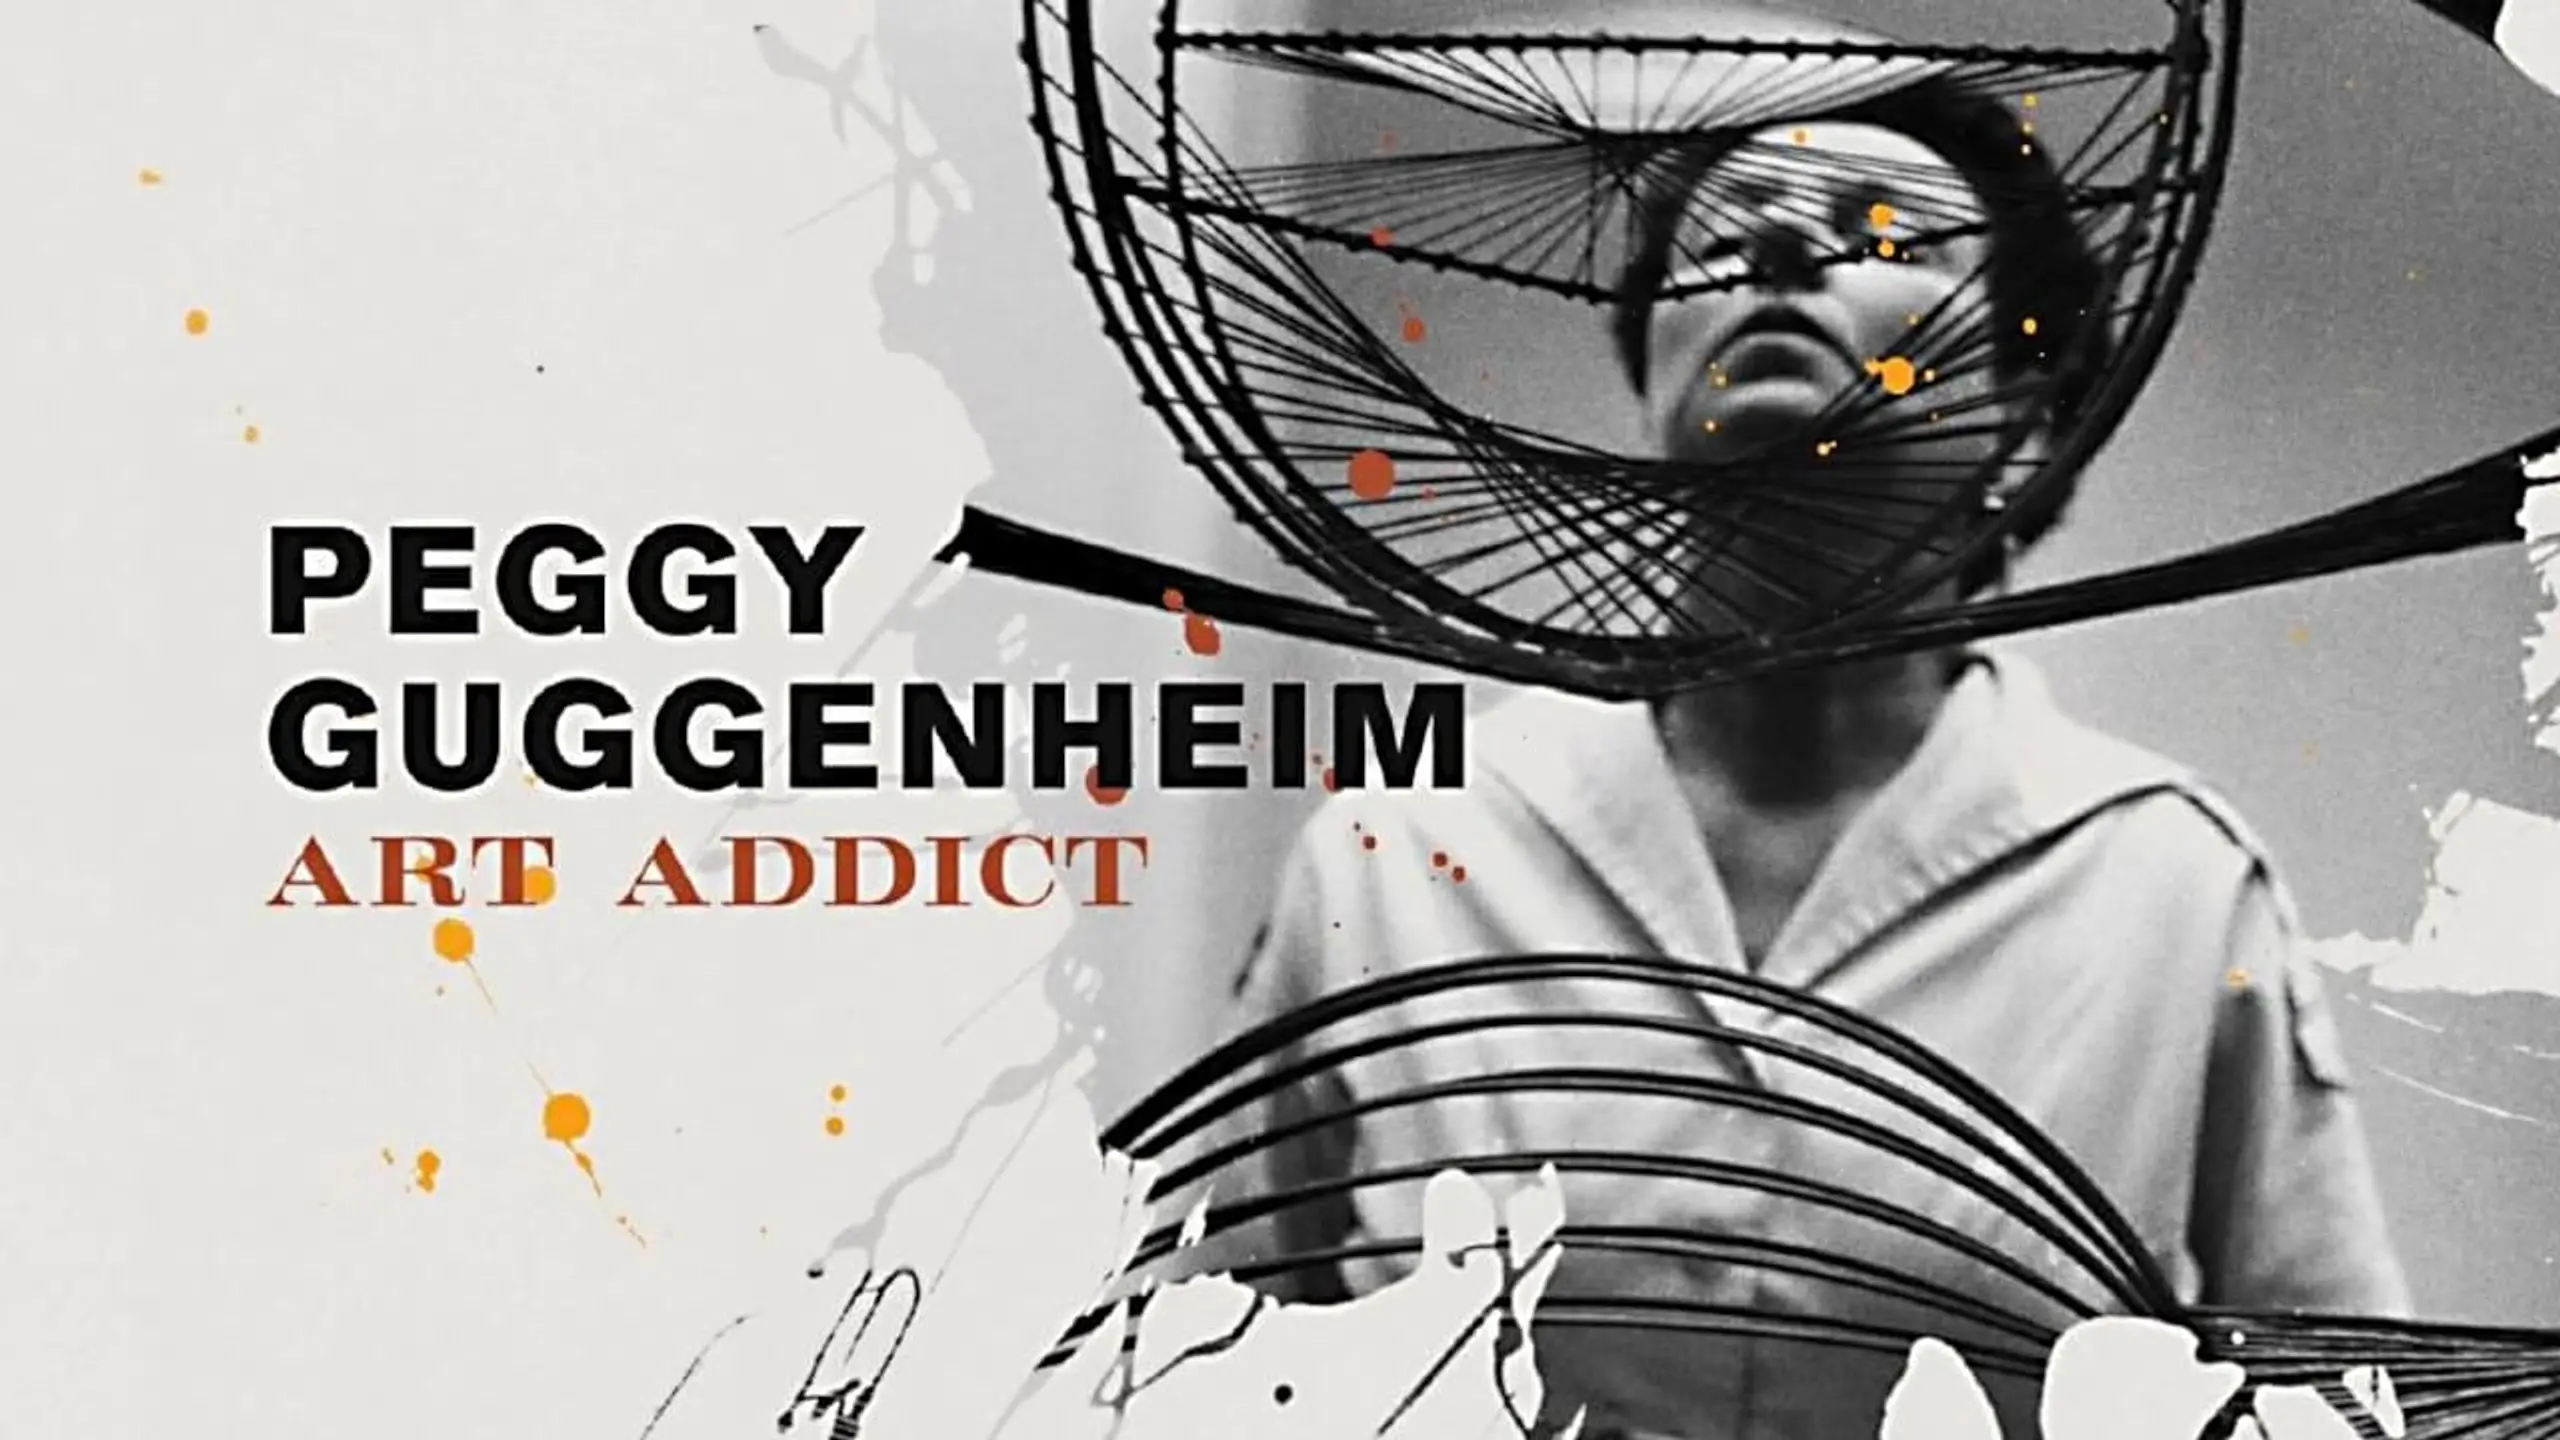 Peggy Guggenheim – Ein Leben für die Kunst